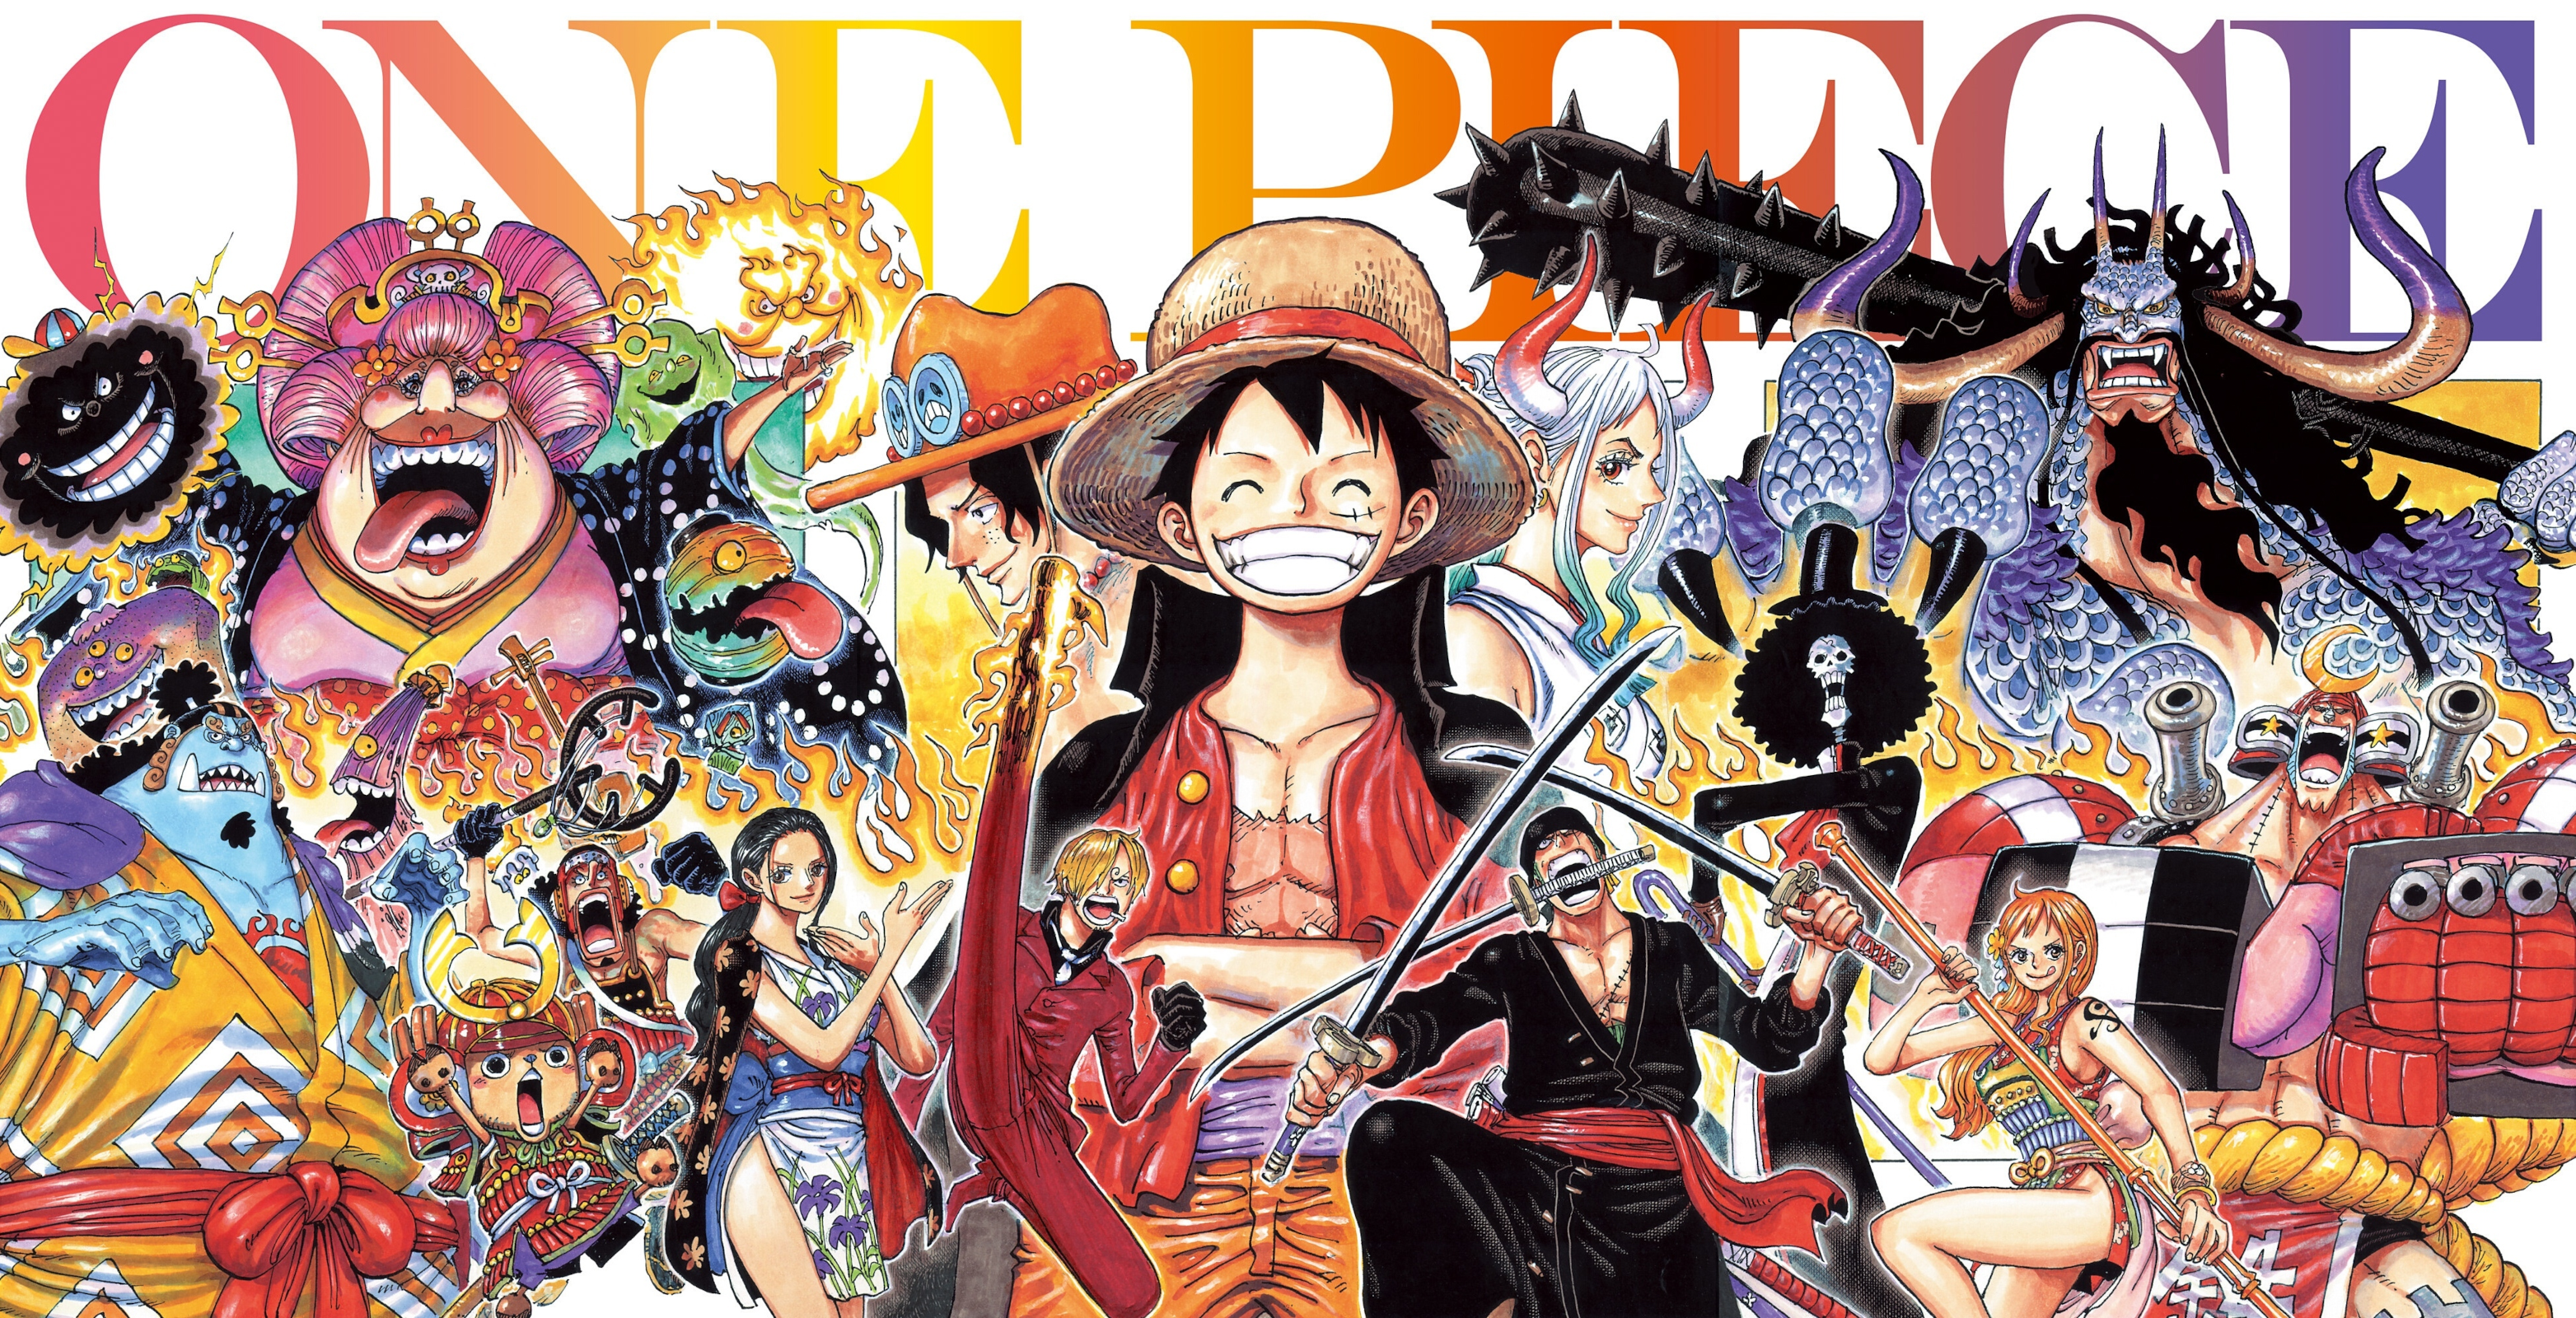 One Piece - édition originale Tome 99 : Luffy au chapeau de paille